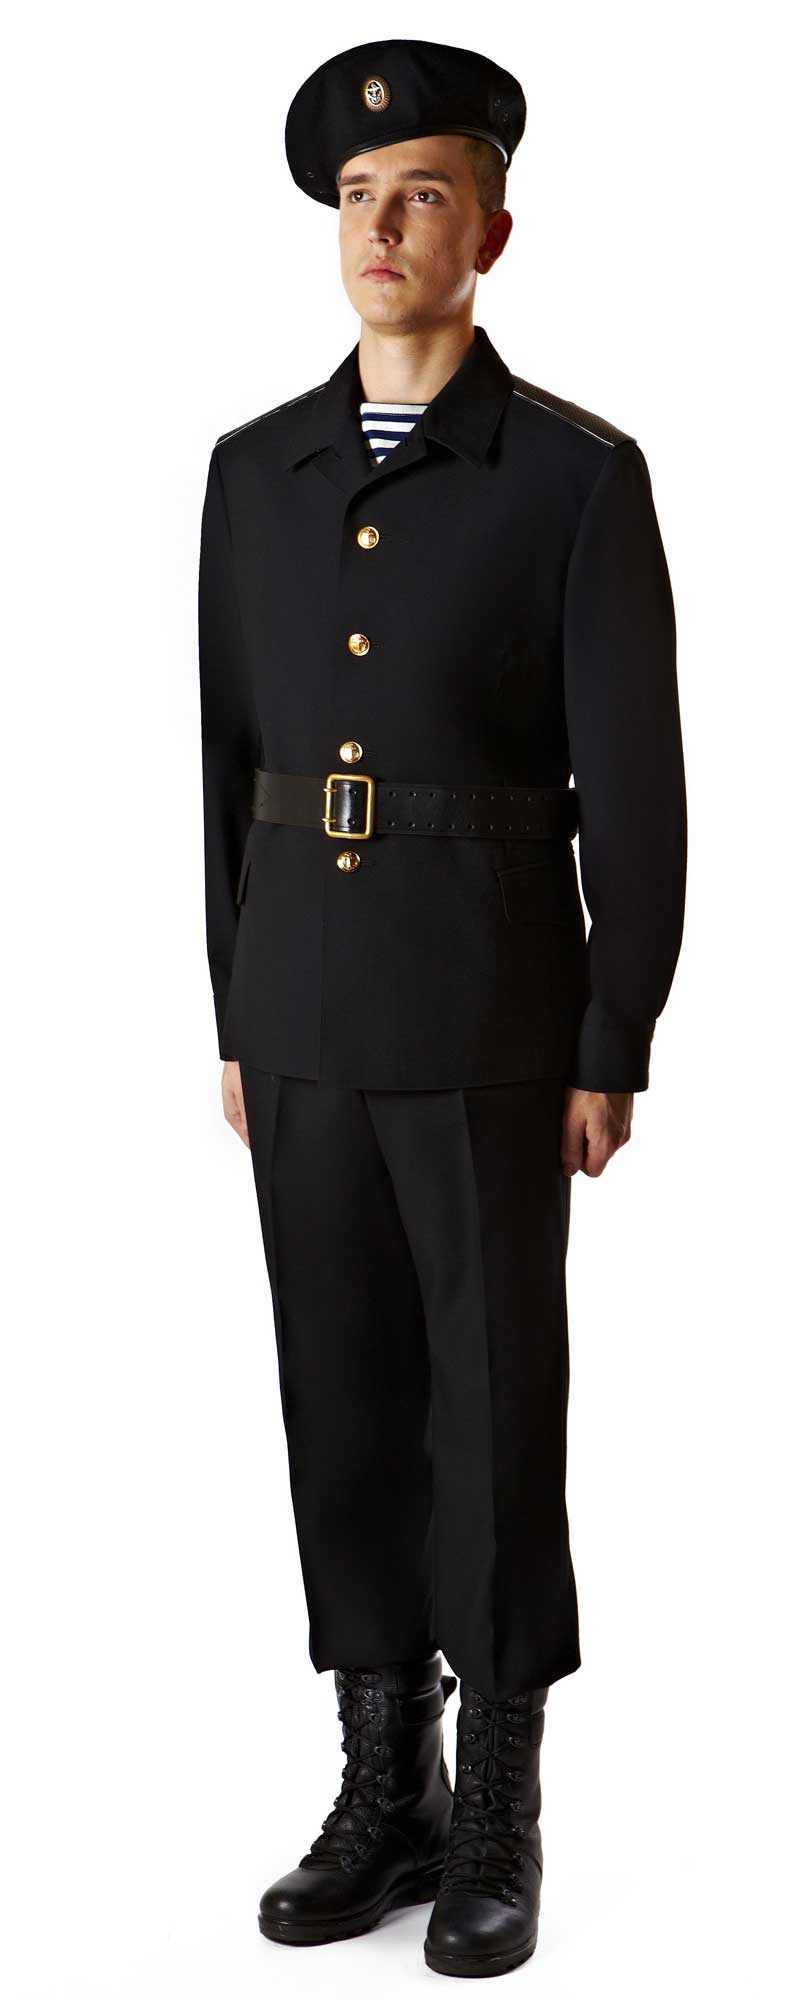 Форма одежды военнослужащих морской пехоты россии